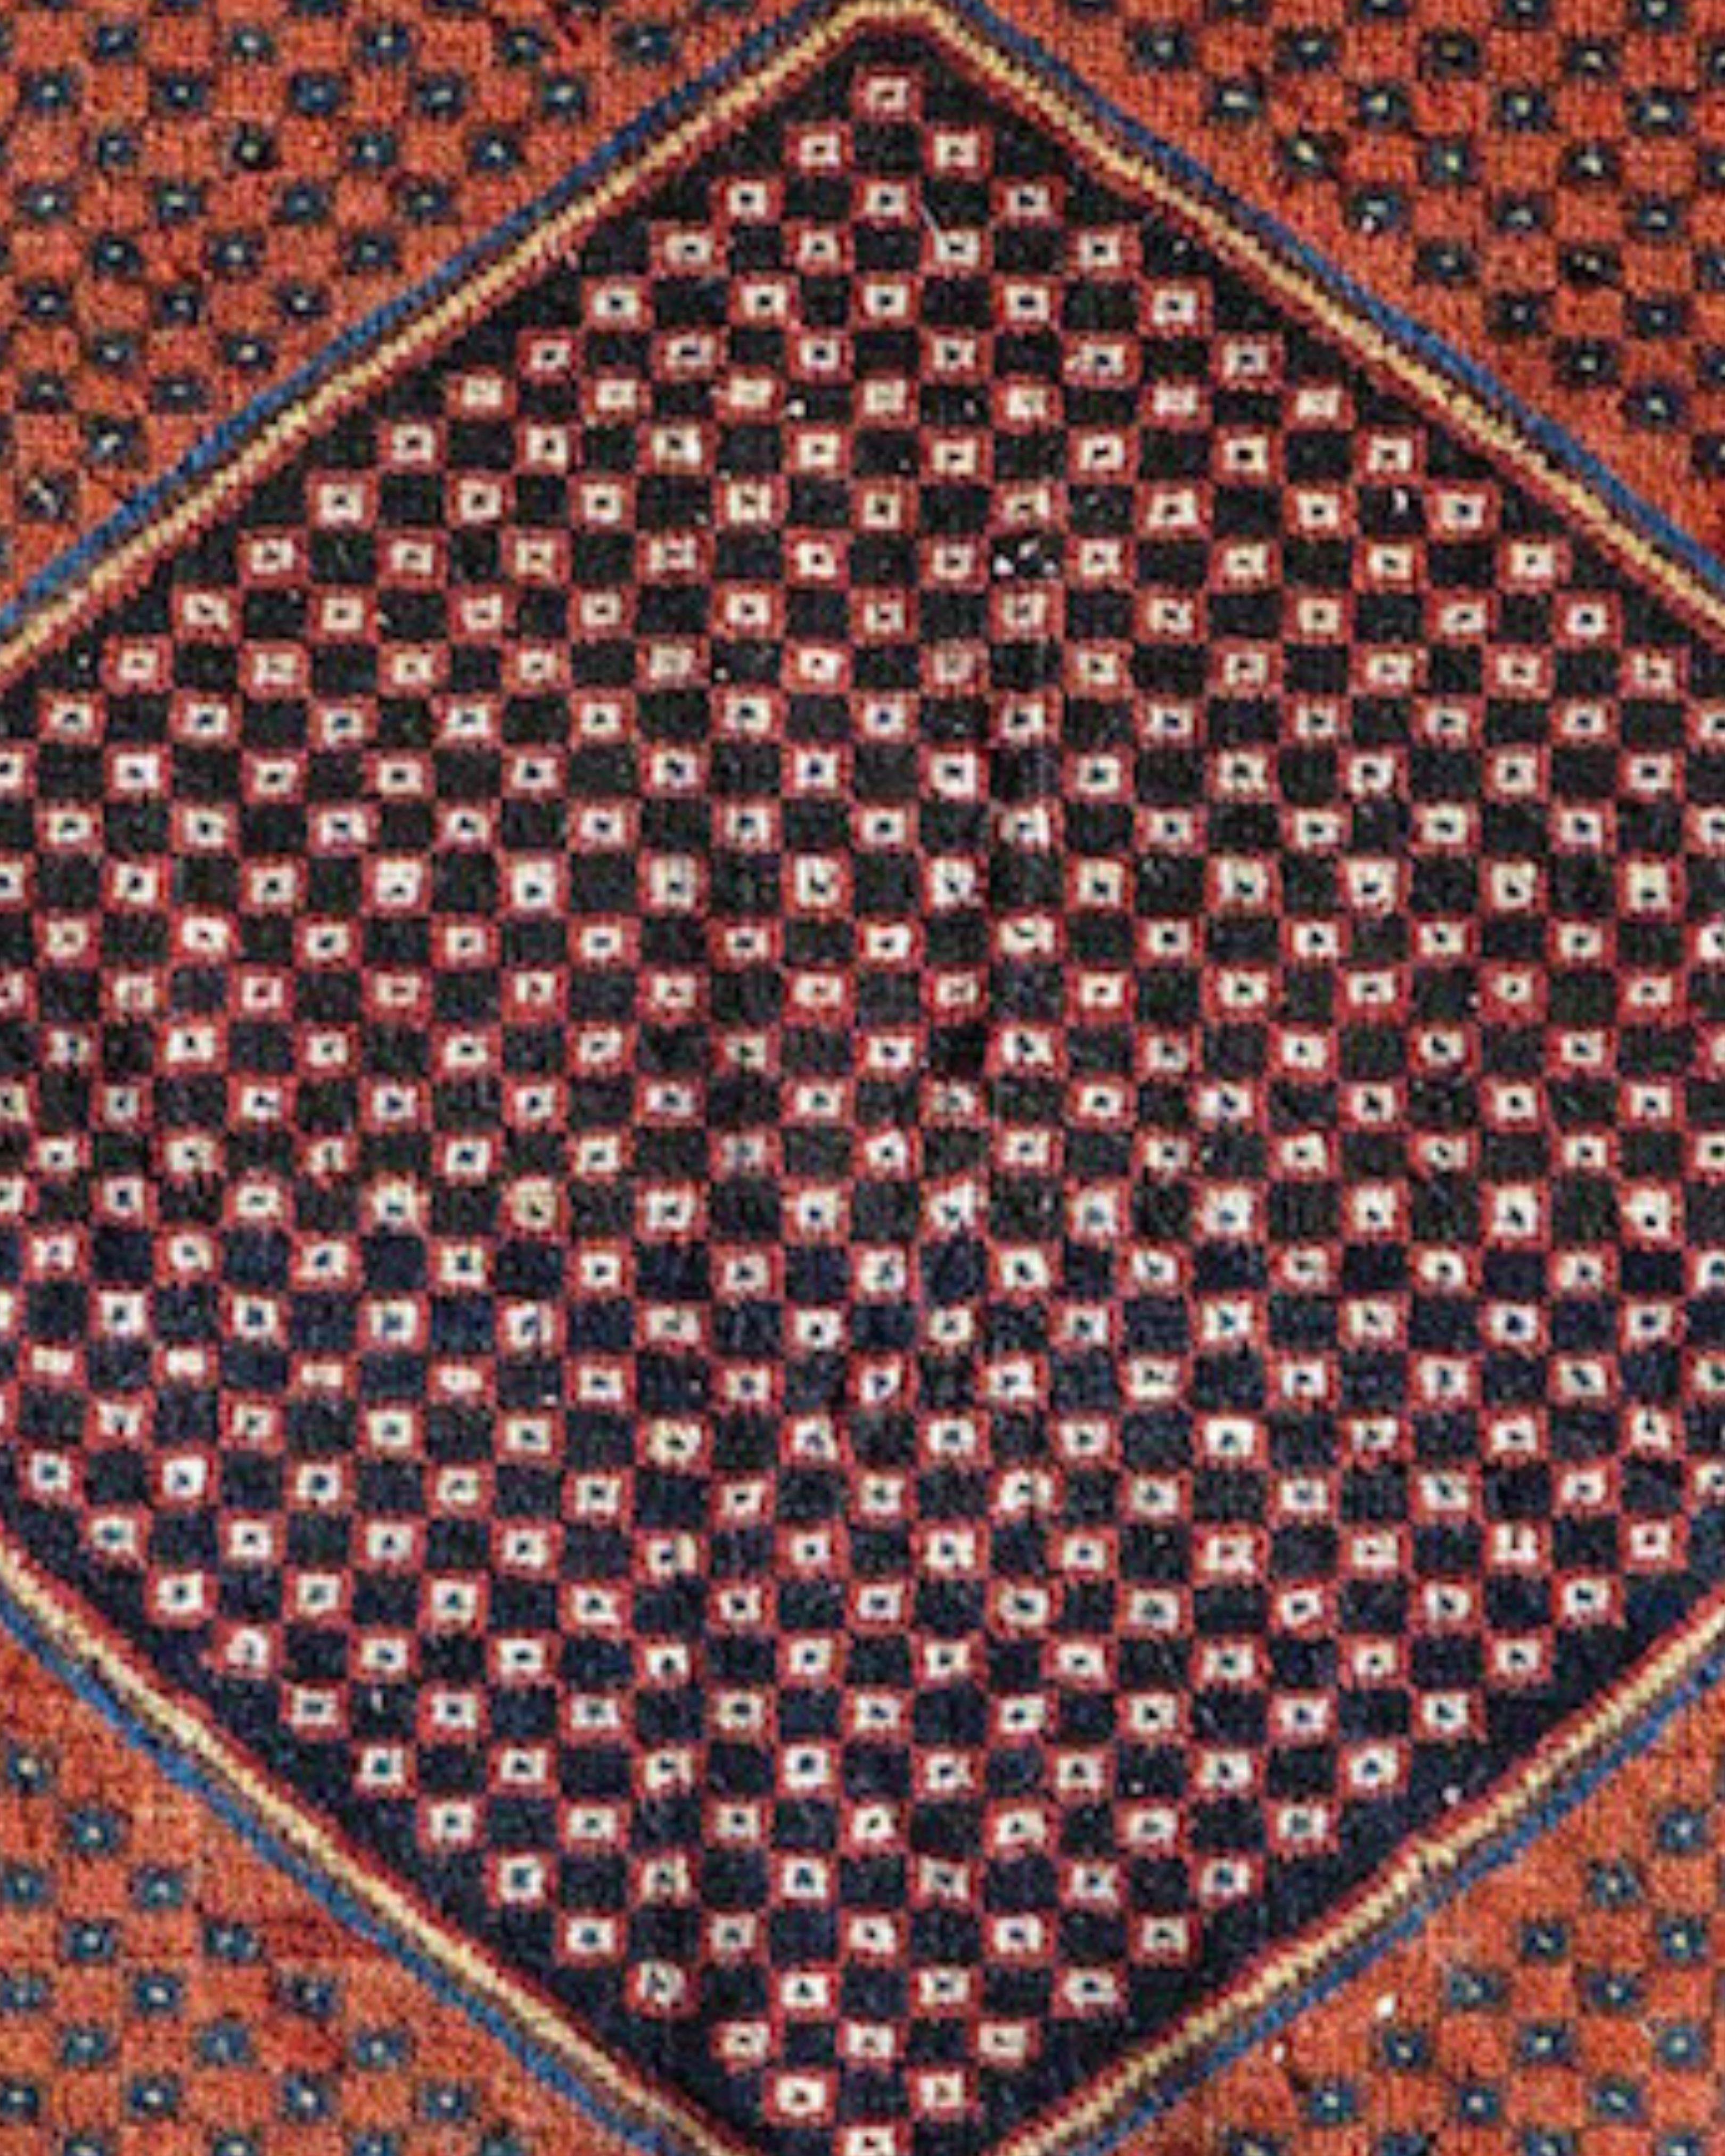 Antike persische Afshar Bagface-Tasche, um 1900

Diese sehr grafische Afshar-Tasche zeigt ein großes zentrales indigoblaues Sechseck vor einem kontrastierenden Terrakotta-Feld. Beide sind durch ein schachbrettartiges Netz unterbrochen, das wie ein